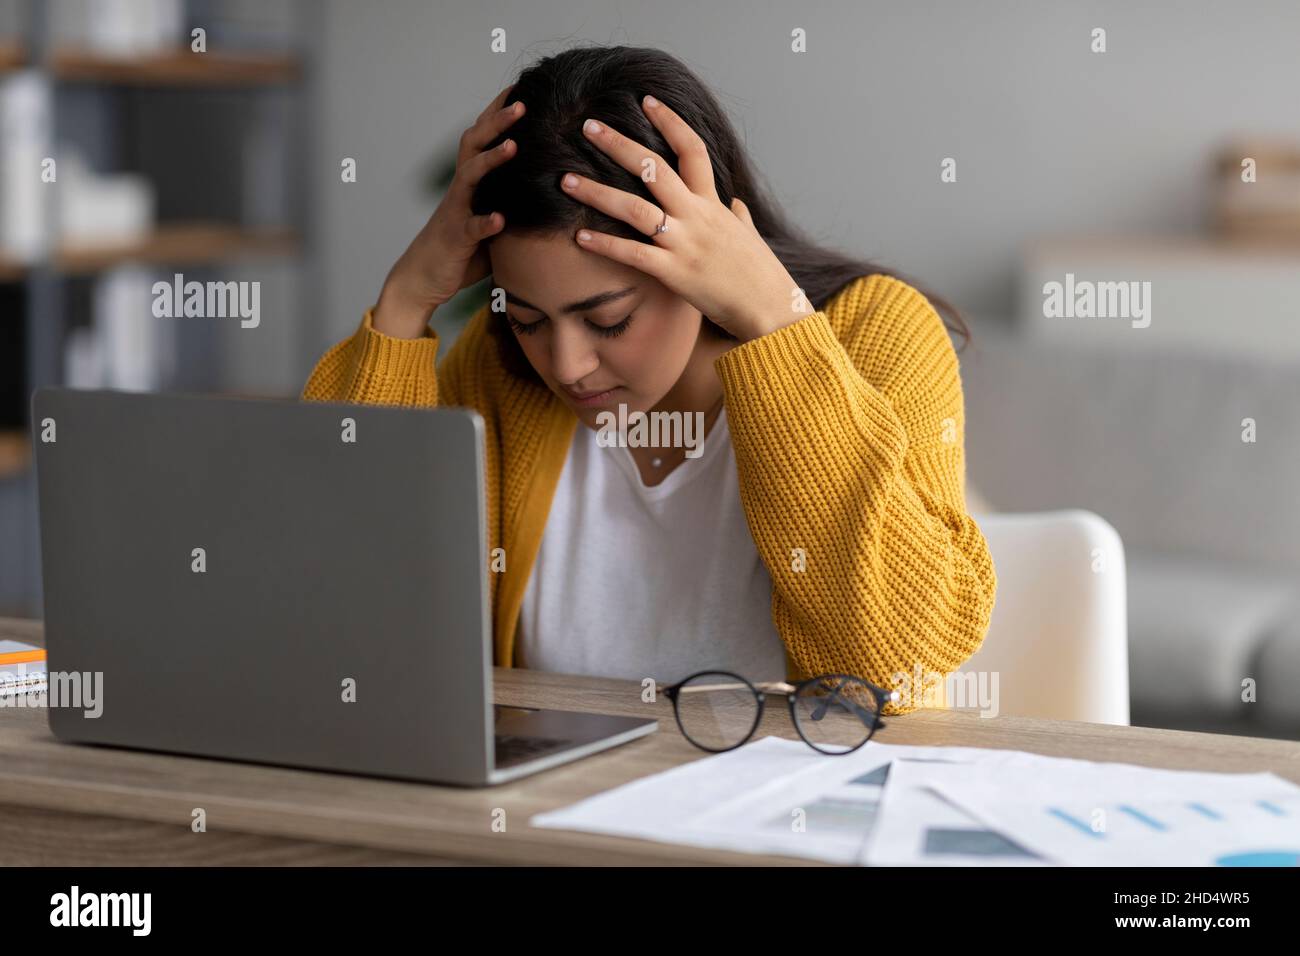 Lavoro stressante, concetto burnout. Ha sottolineato la signora araba che lavora sul laptop e tocca la testa, avendo problemi sul posto di lavoro Foto Stock